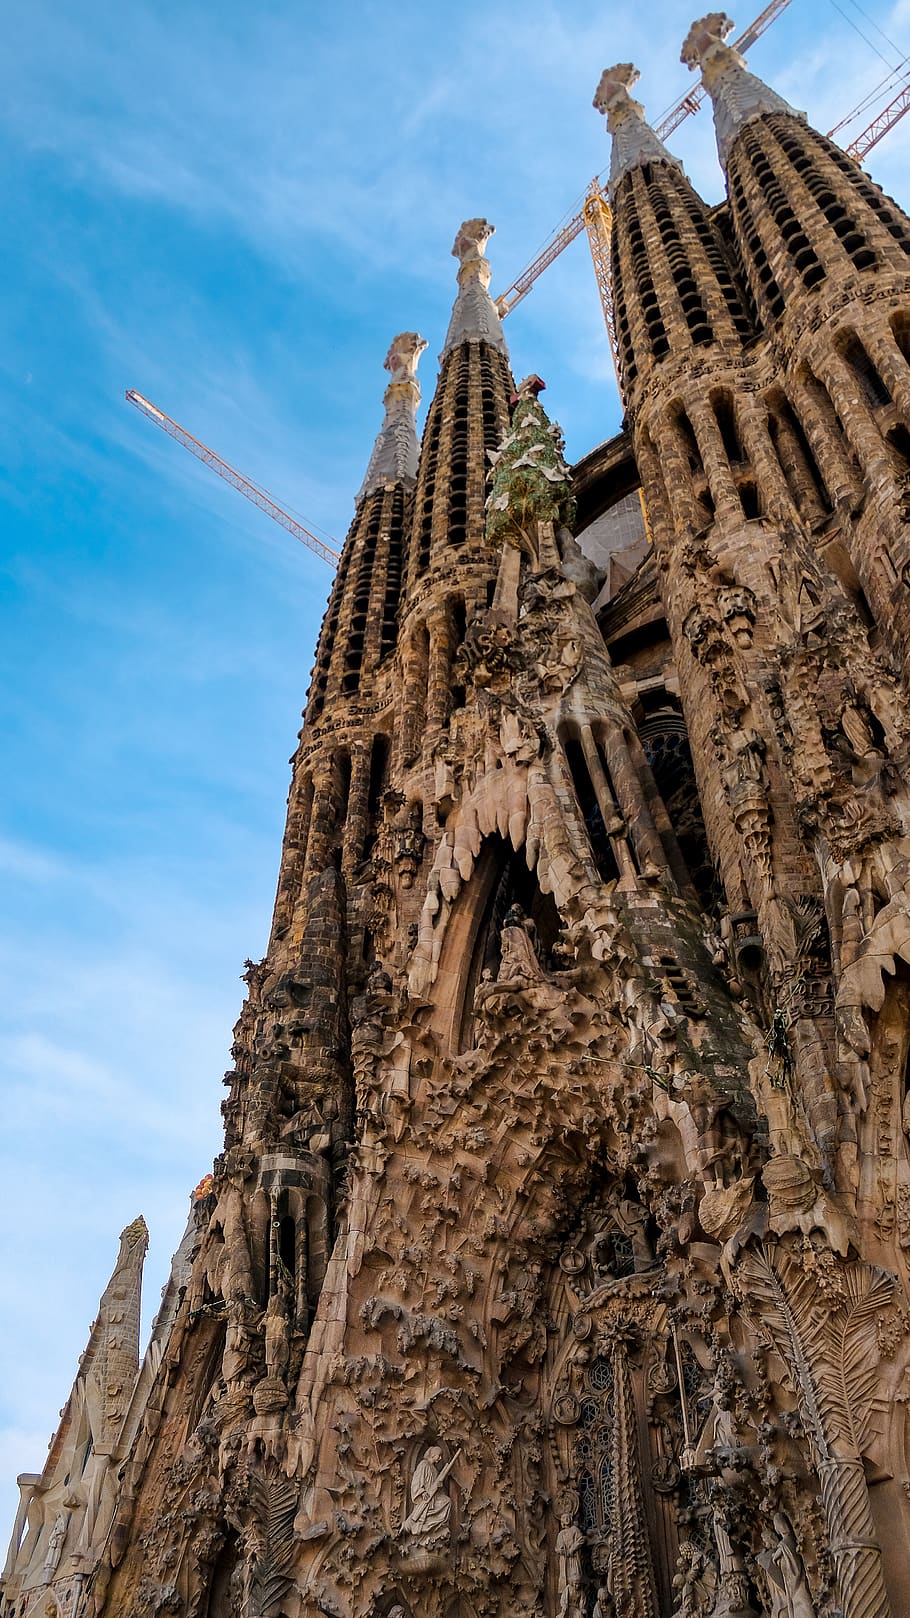 Hd Wallpaper Architecture Building Steeple Spire Tower Barcelona Sagrada Familia Wallpaper Flare